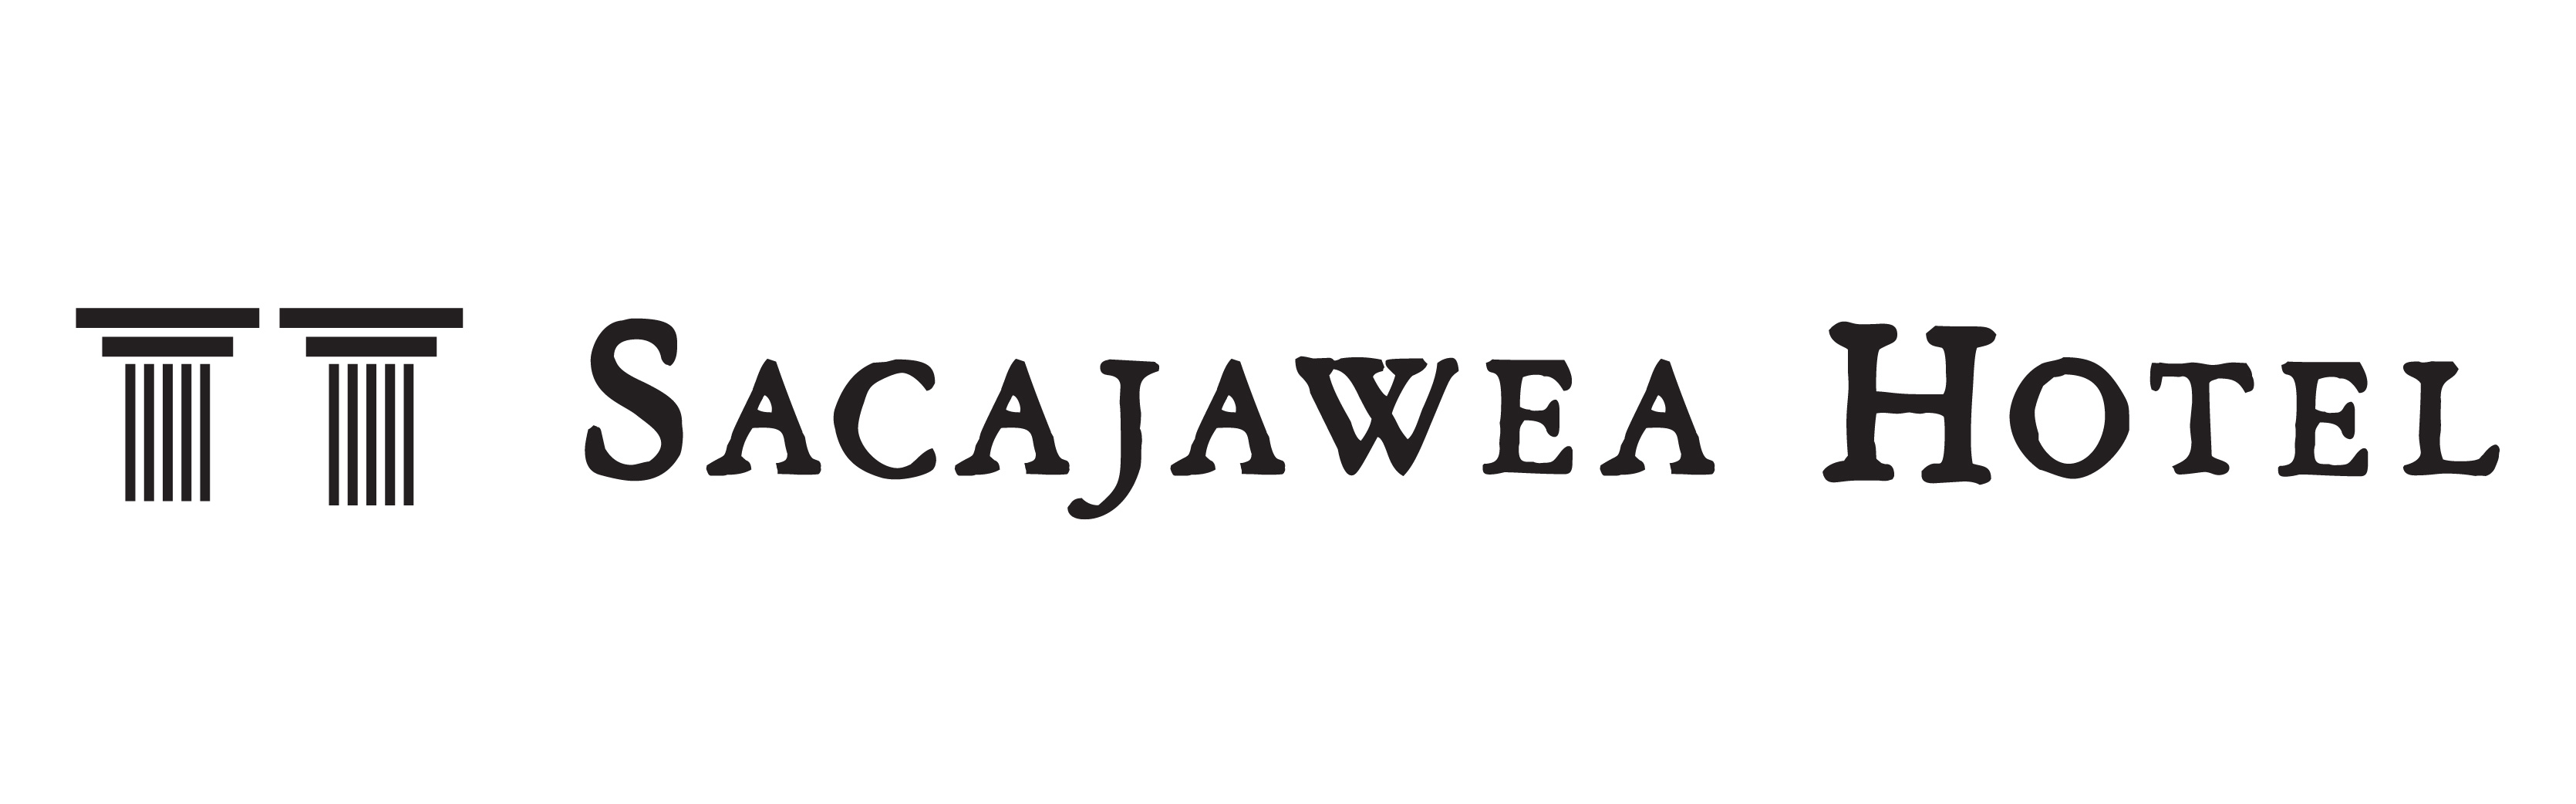 Sacajawea Hotel